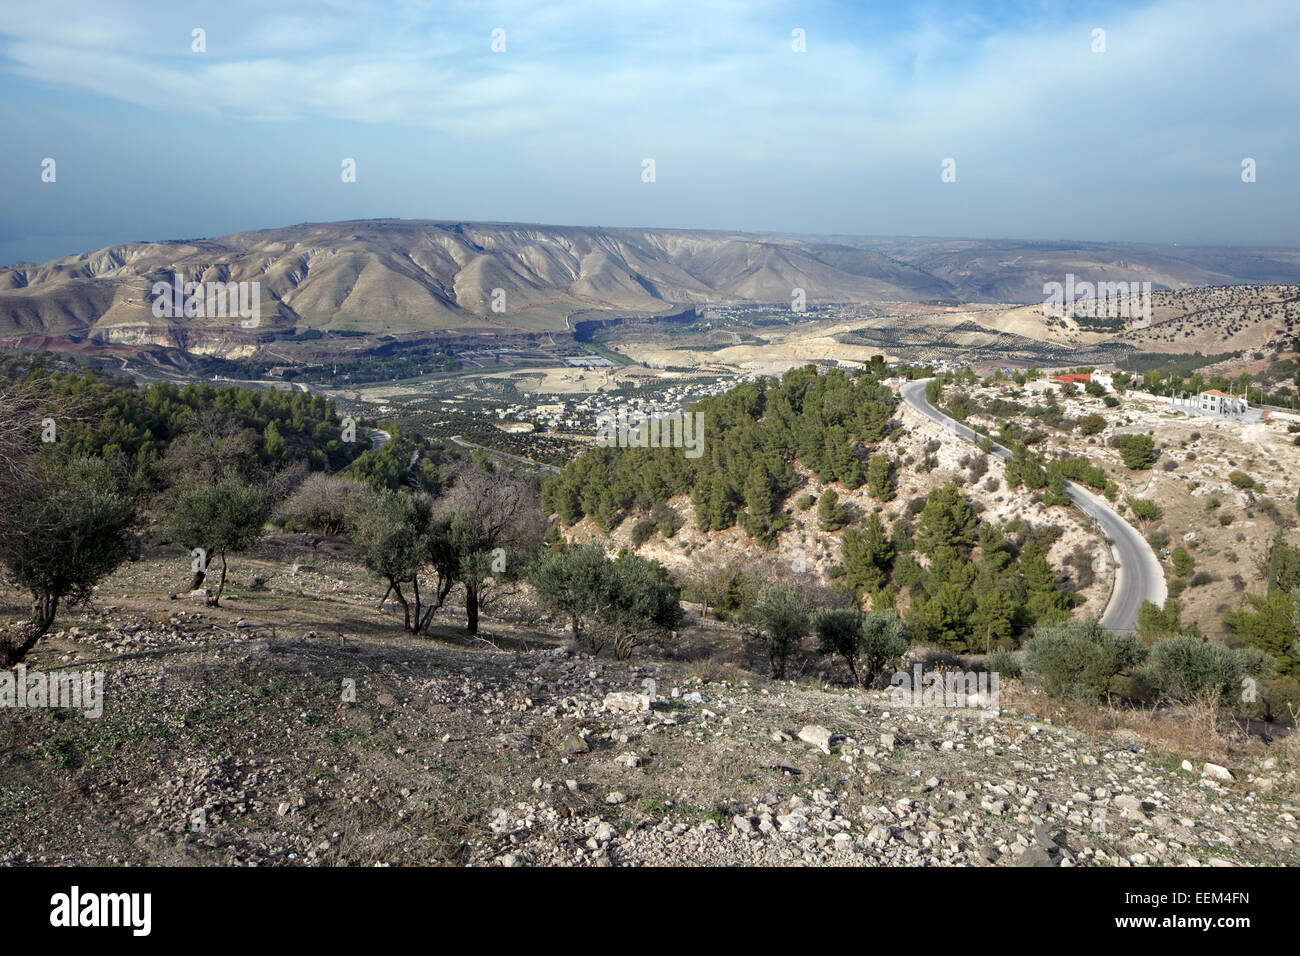 Vue sur la fertile vallée du Jourdain avec le plateau du Golan à l'arrière, ancienne ville de Gadara, Umm Qais, Jordanie Banque D'Images